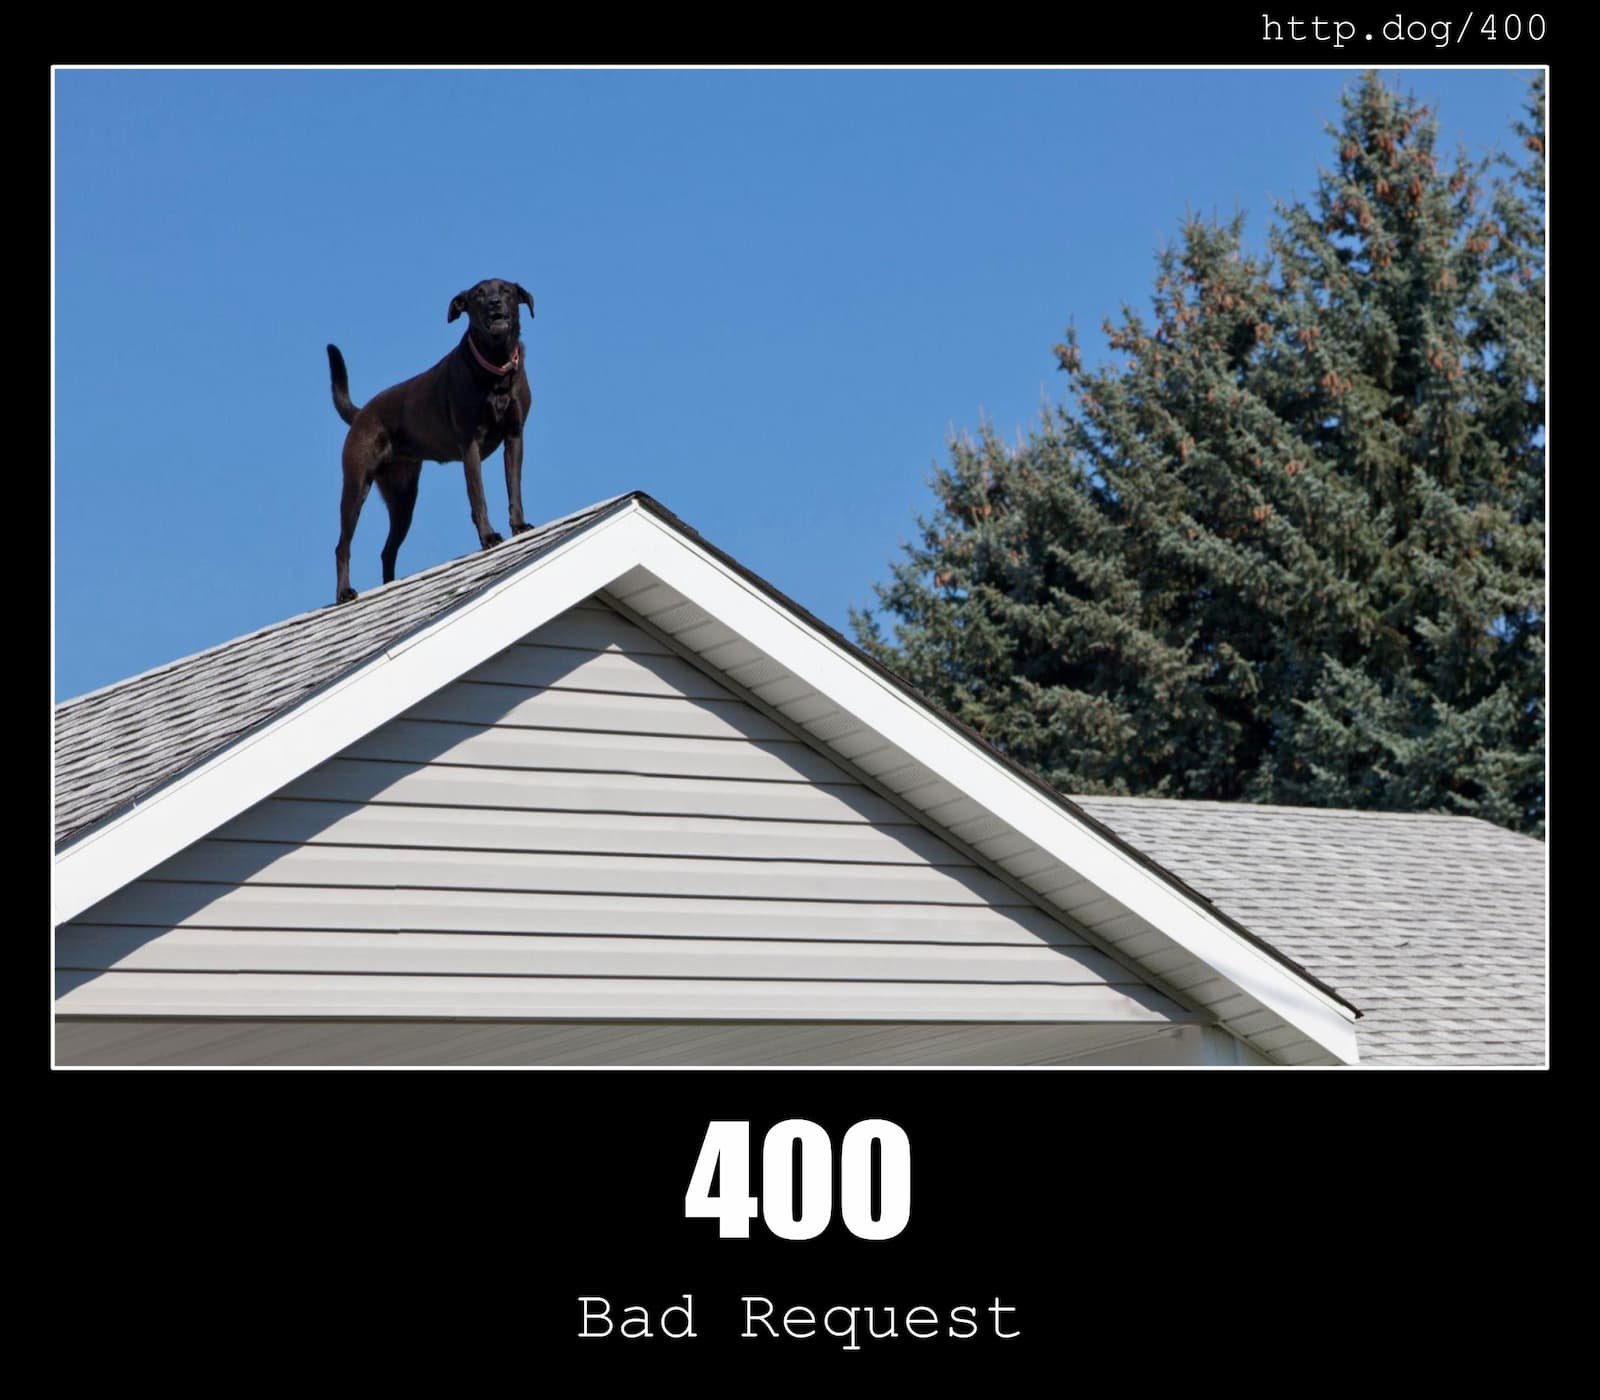 HTTP Status Code 400 Bad Request